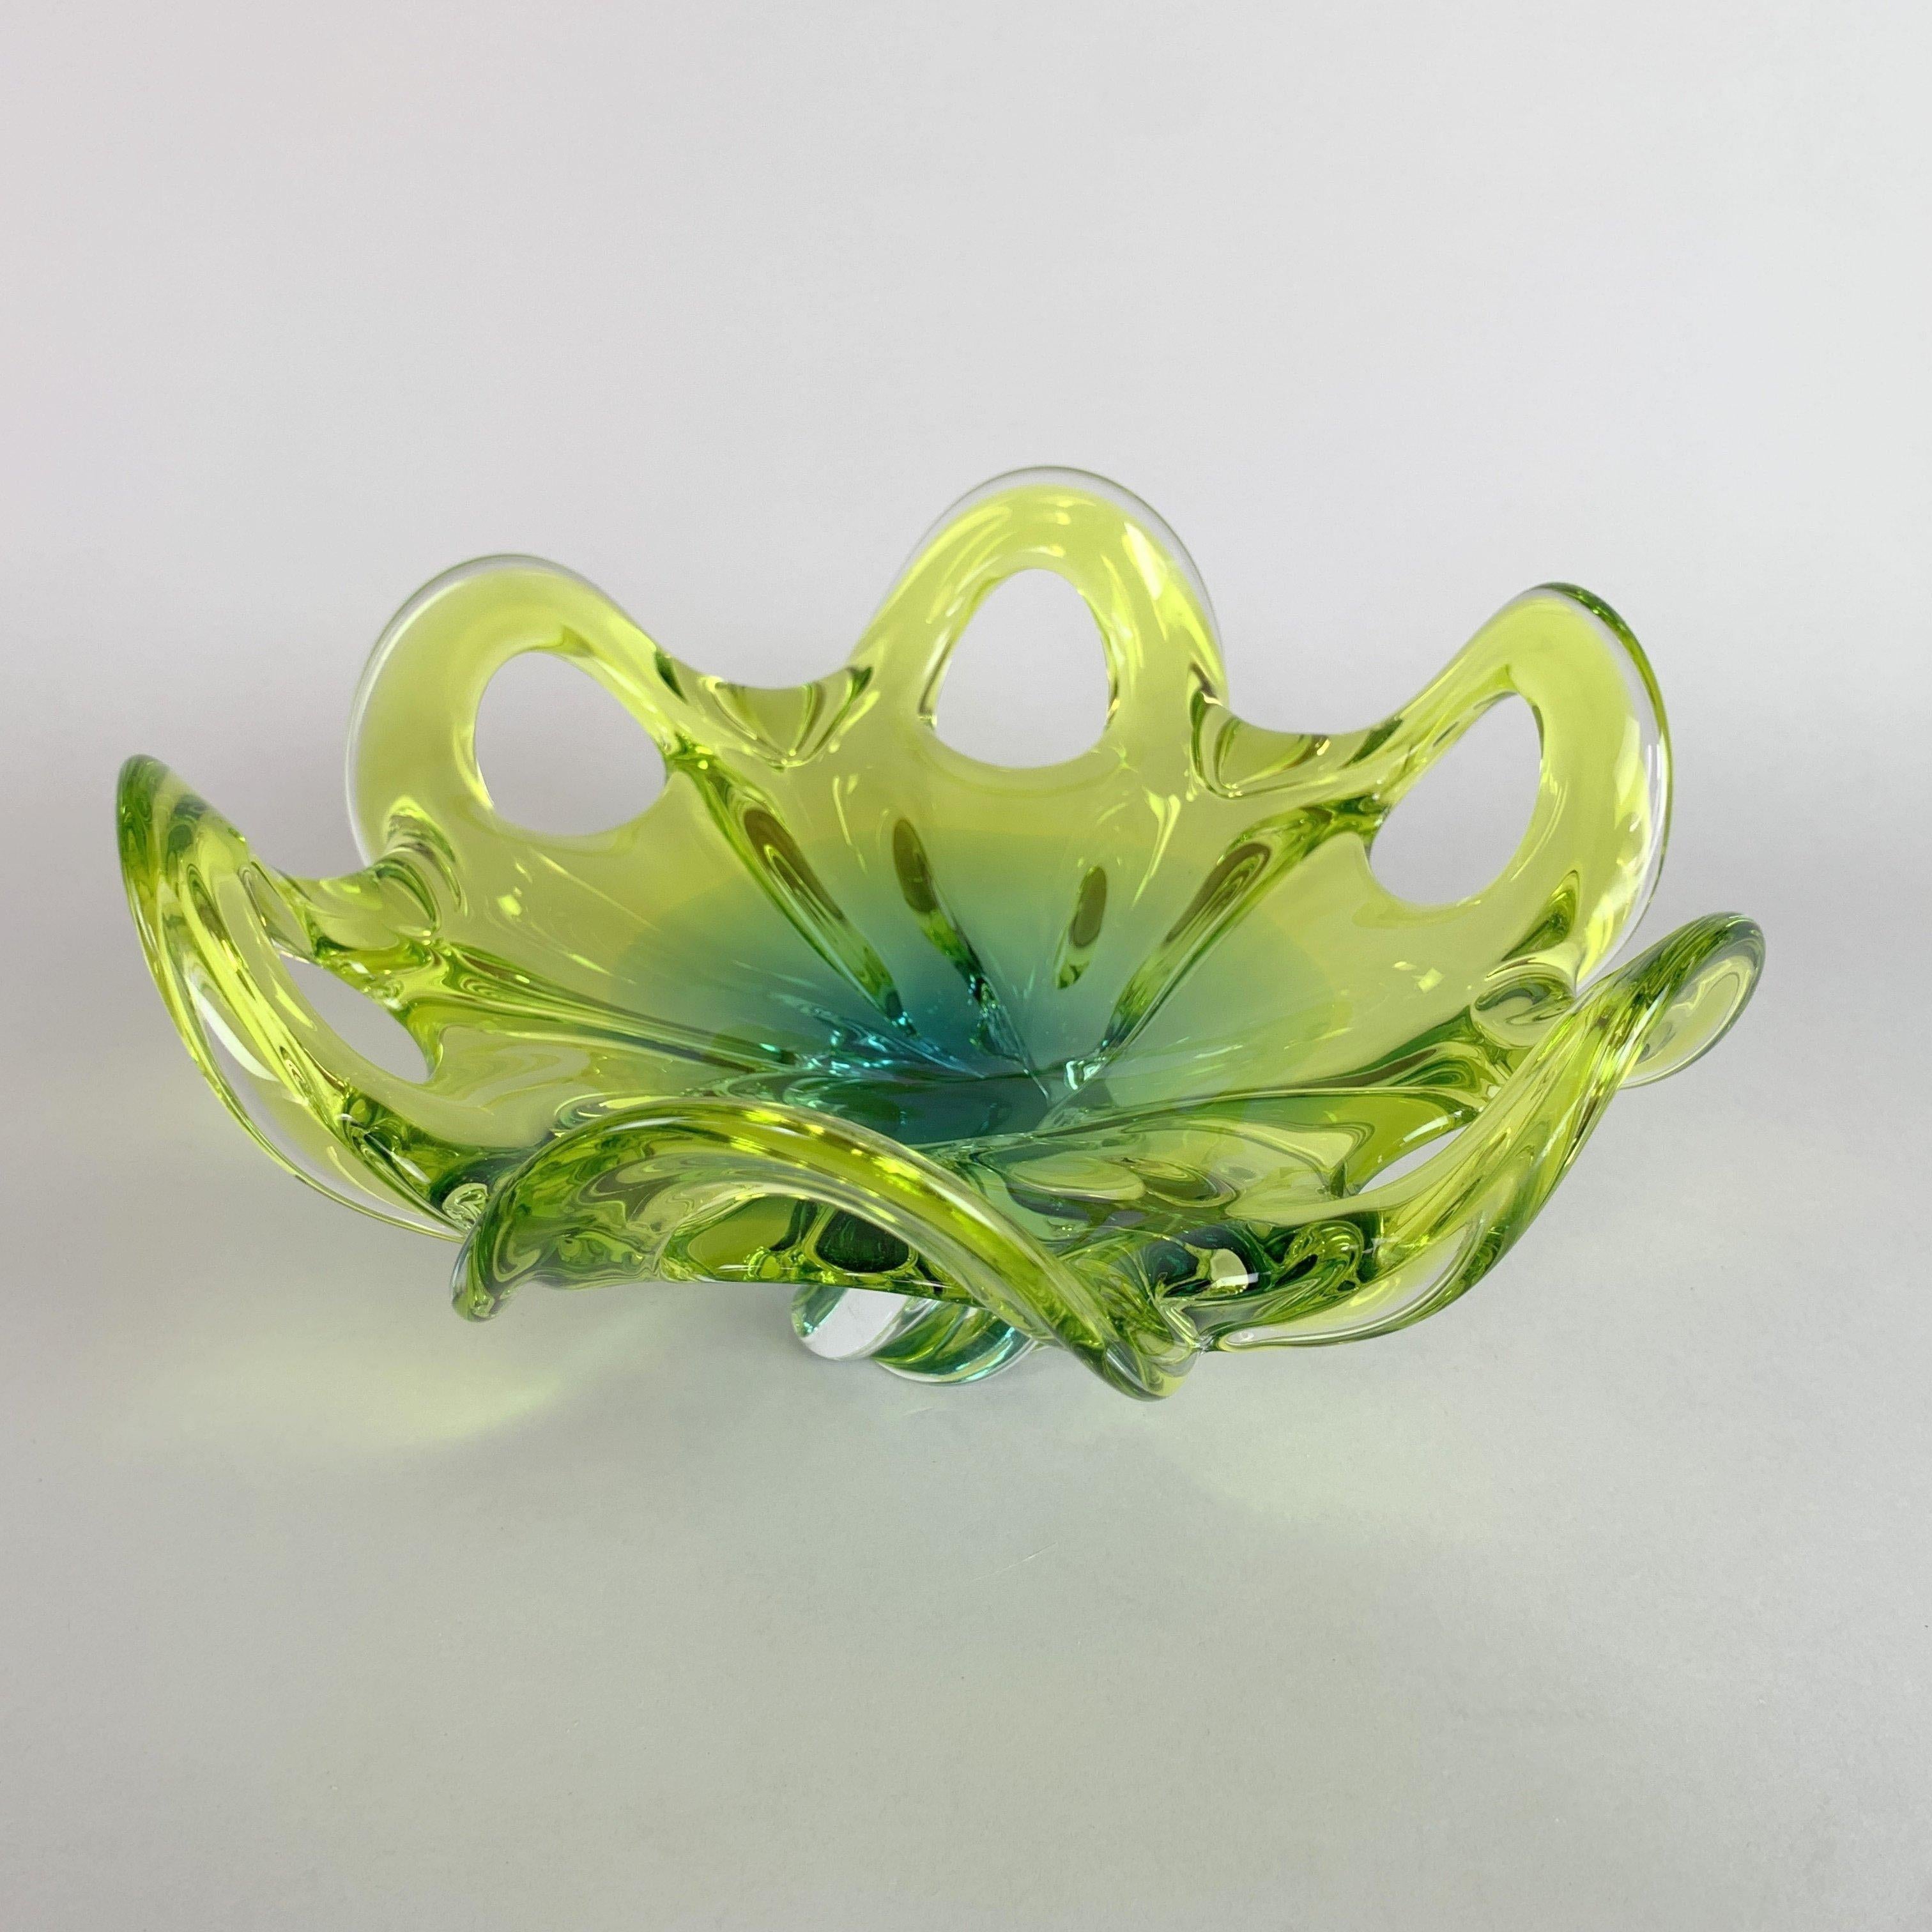 Mid-20th Century Czech Art Glass Bowl by Josef Hospodka for Chribska Glassworks